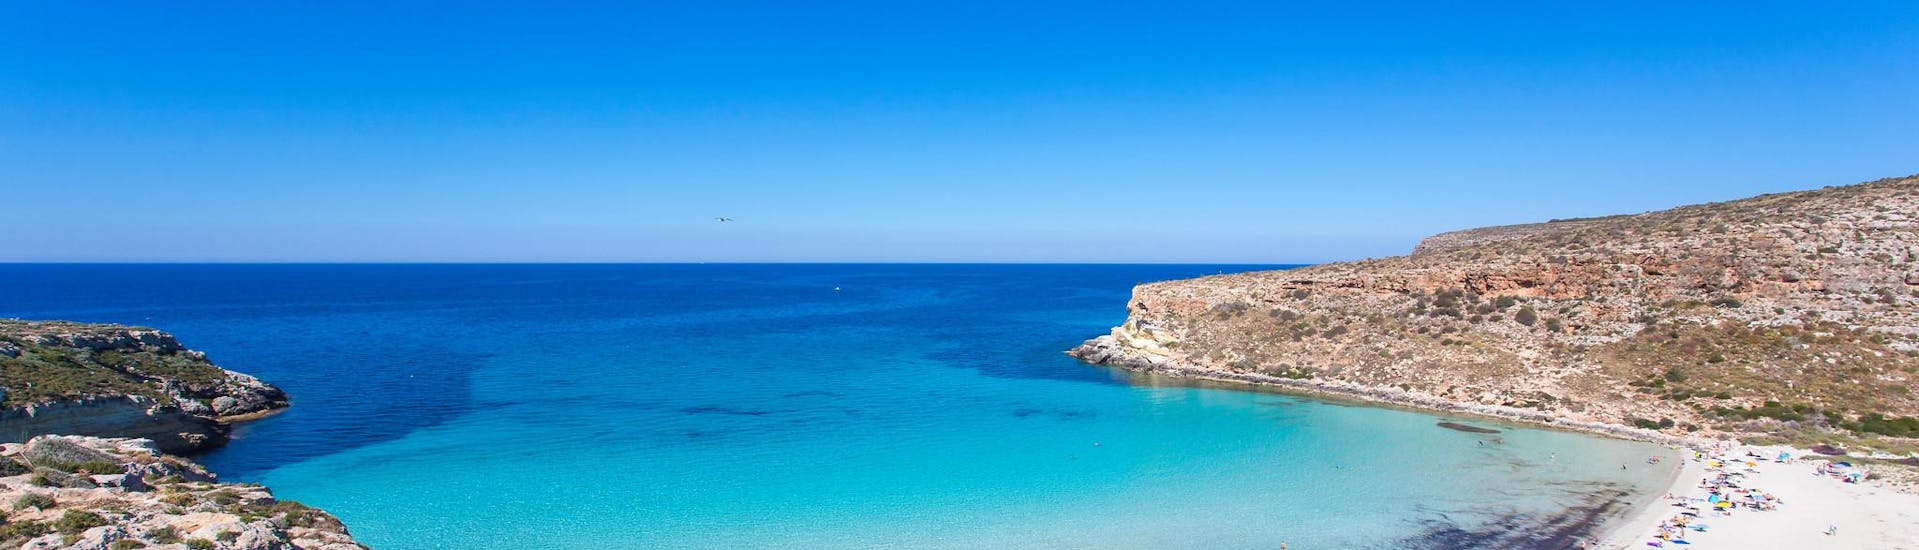 Una delle spiagge più belle e famose di Marsala, in Sicilia.